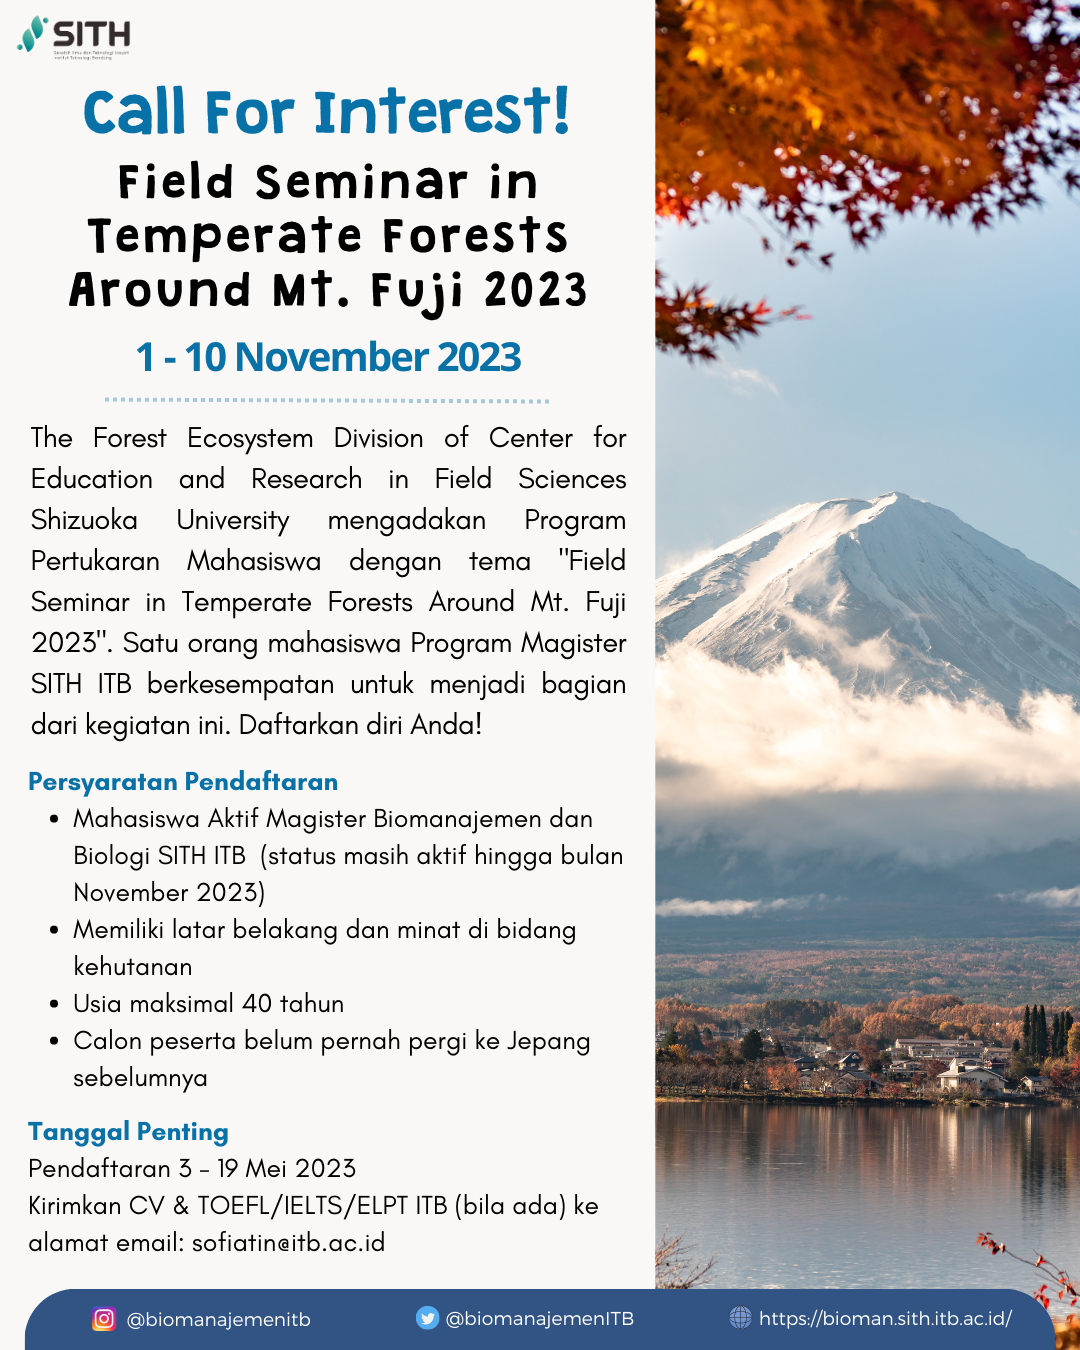 Field Seminar in Temperate Forests Around Mt. Fuji 2023